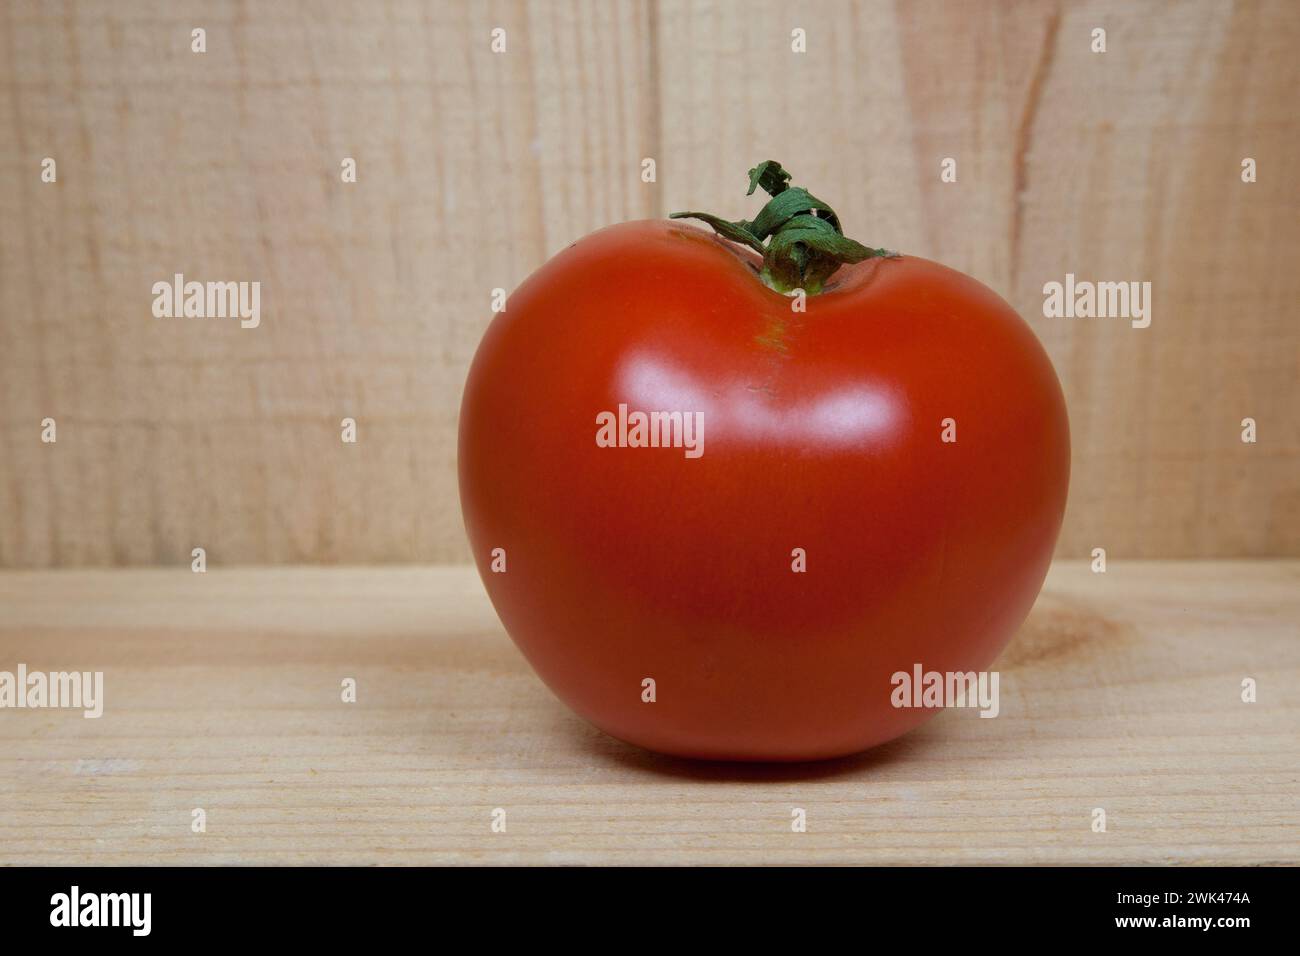 Nella foto, un pomodoro giace in una scatola di legno rustica, i cui colori caldi sottolineano la freschezza del frutto rosso. Foto Stock